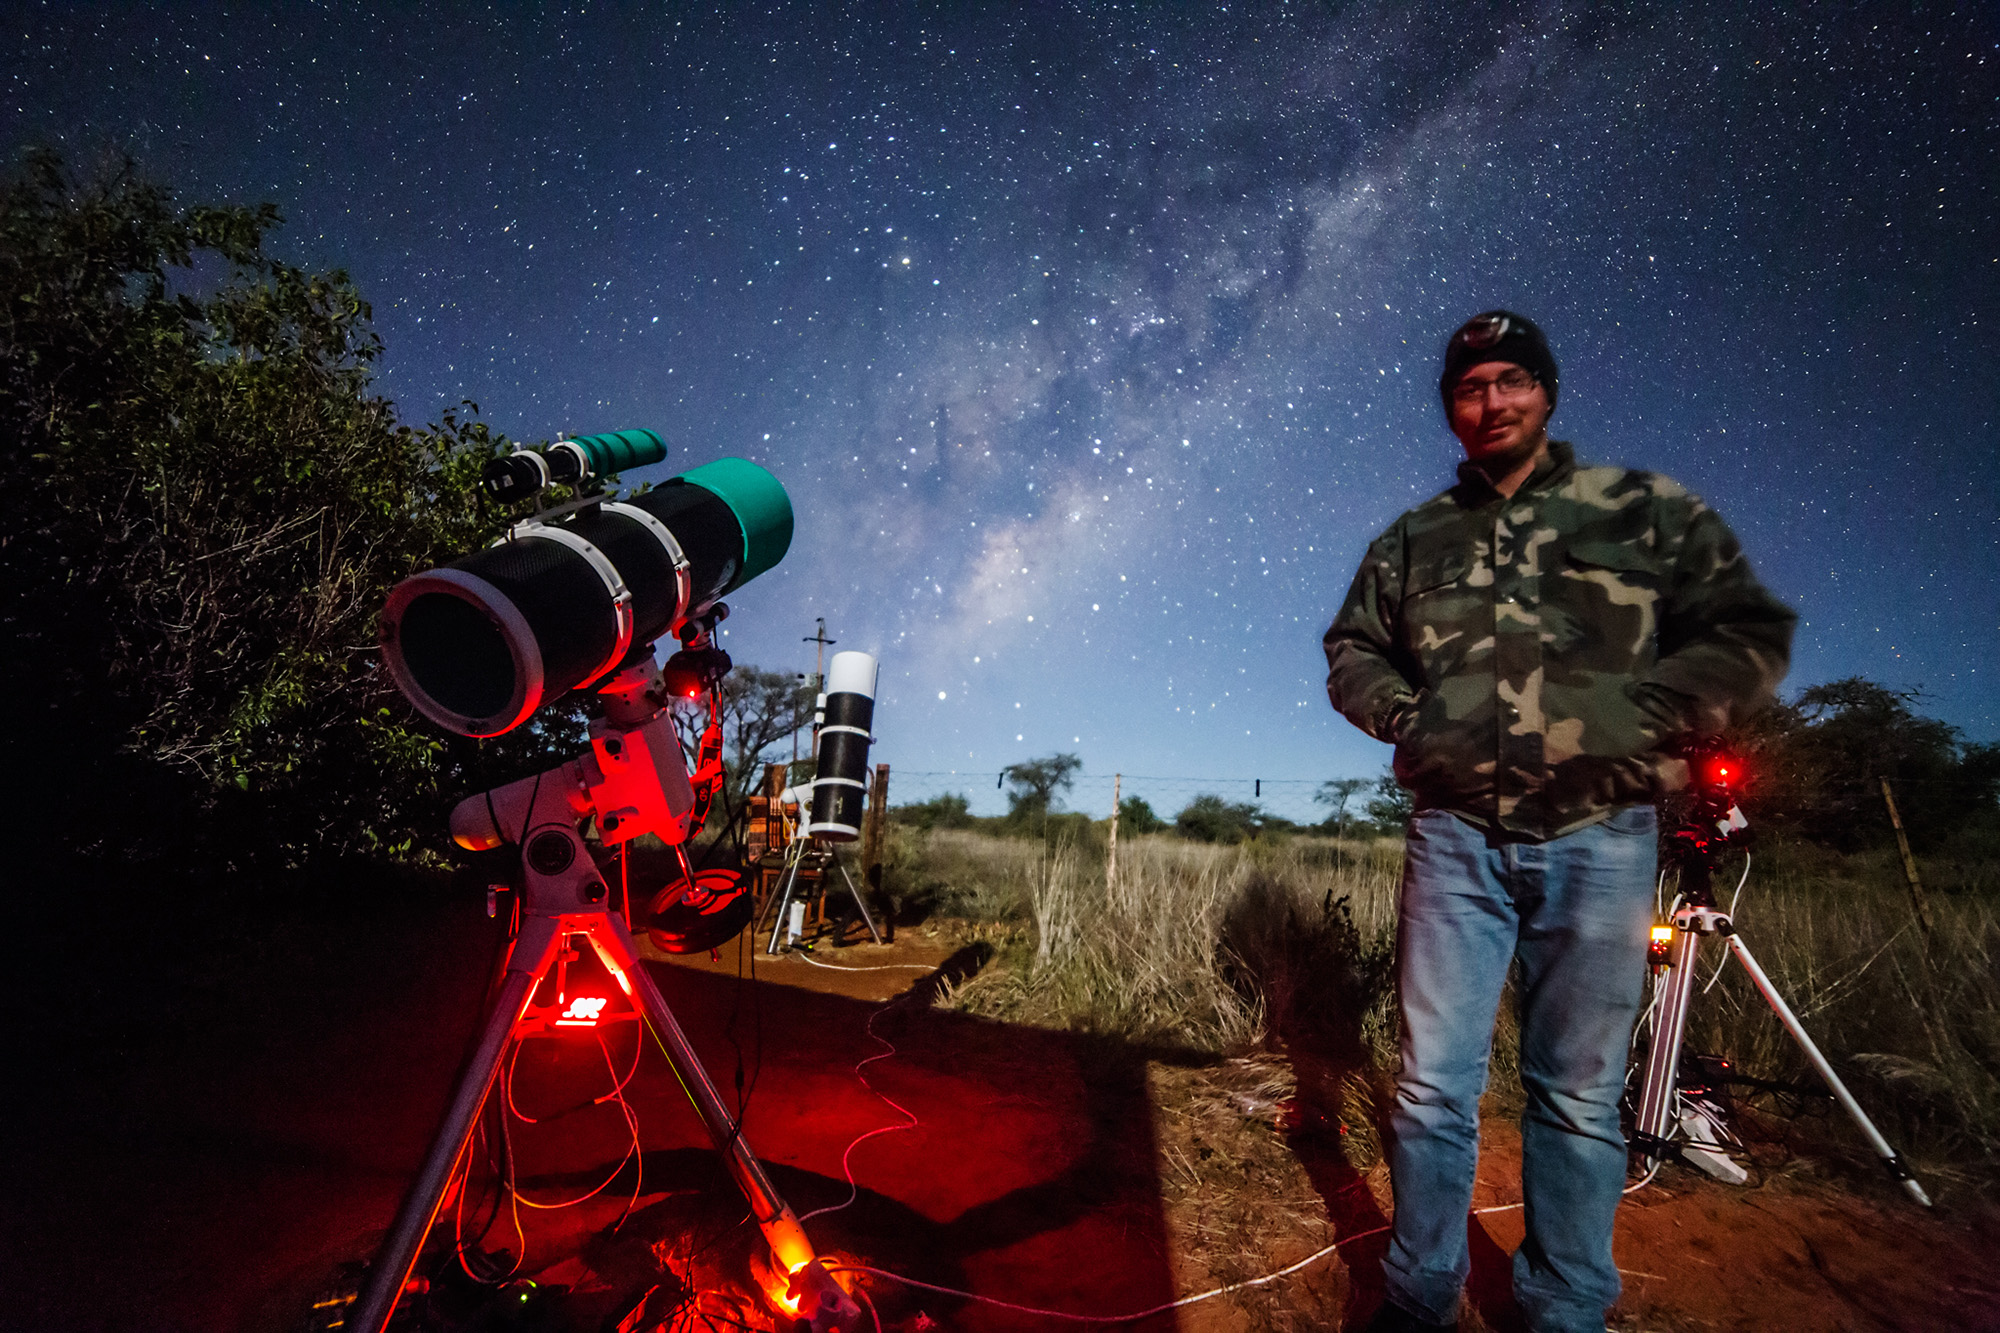 Schmall Rafael-Asztrofotózás Namíbiában - 2018 május. Az utolsó éjszakák már holdfényesek voltak és ez lehetőséget adott egy-egy „életkép” elkészítéséhez.